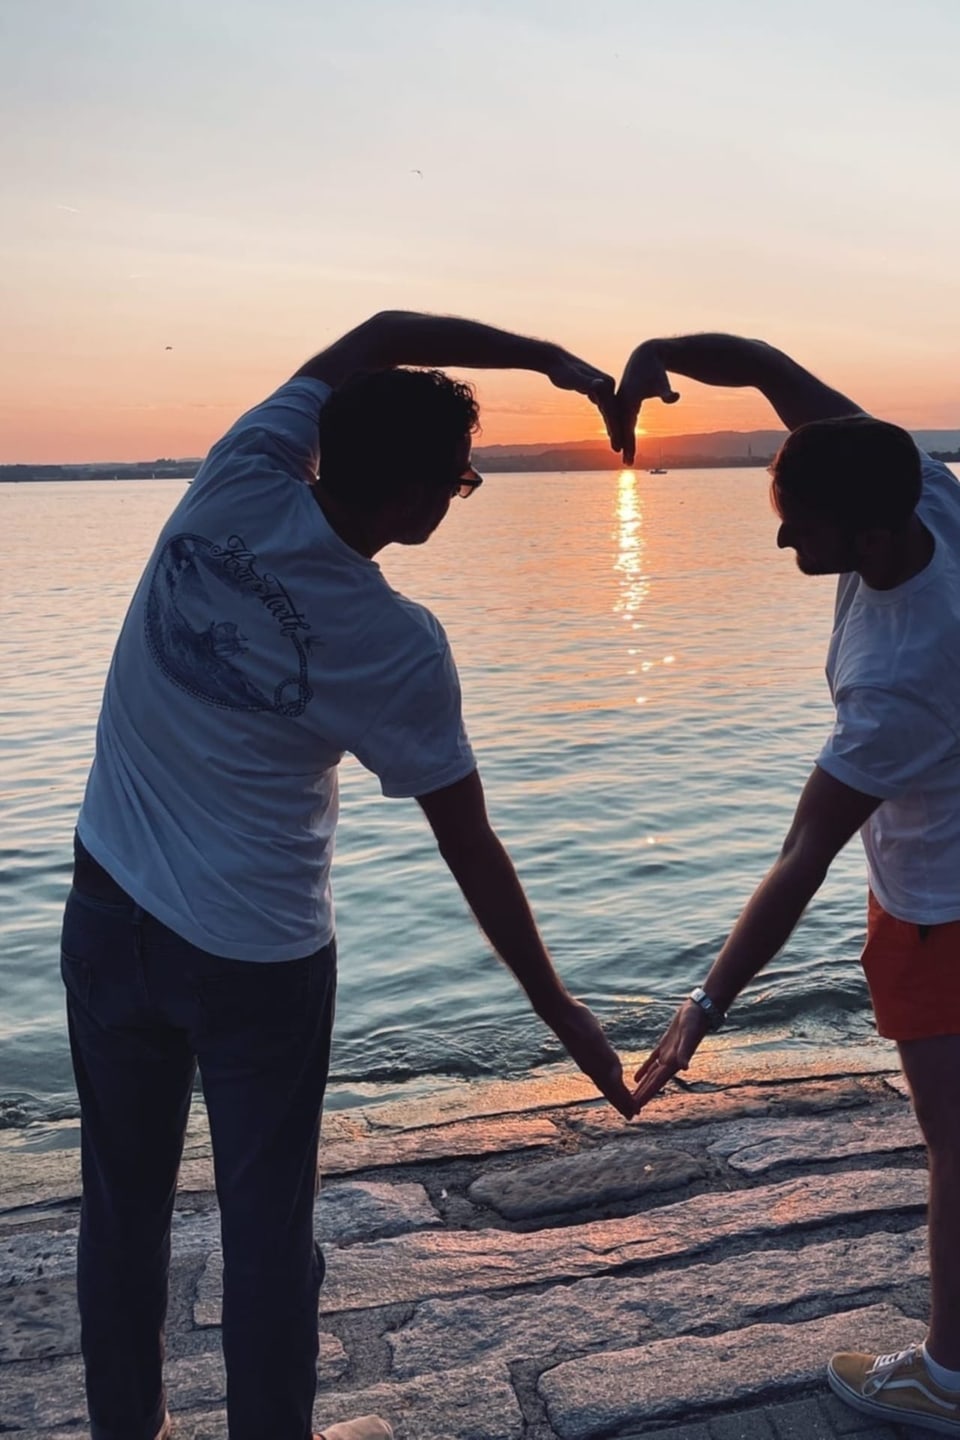 Zwei Männer am Ufer eines Sees bei Sonnenuntergang formen ein Herz mit ihren Armen.